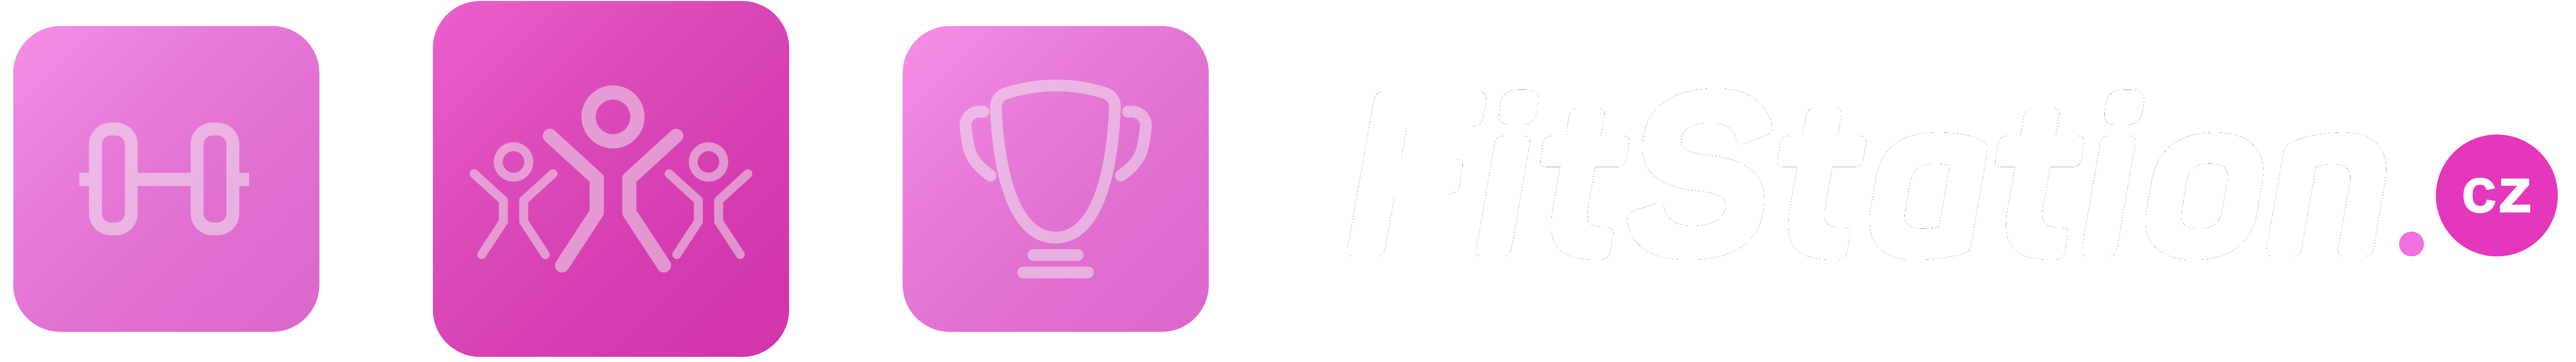 Logo FitStation.cz